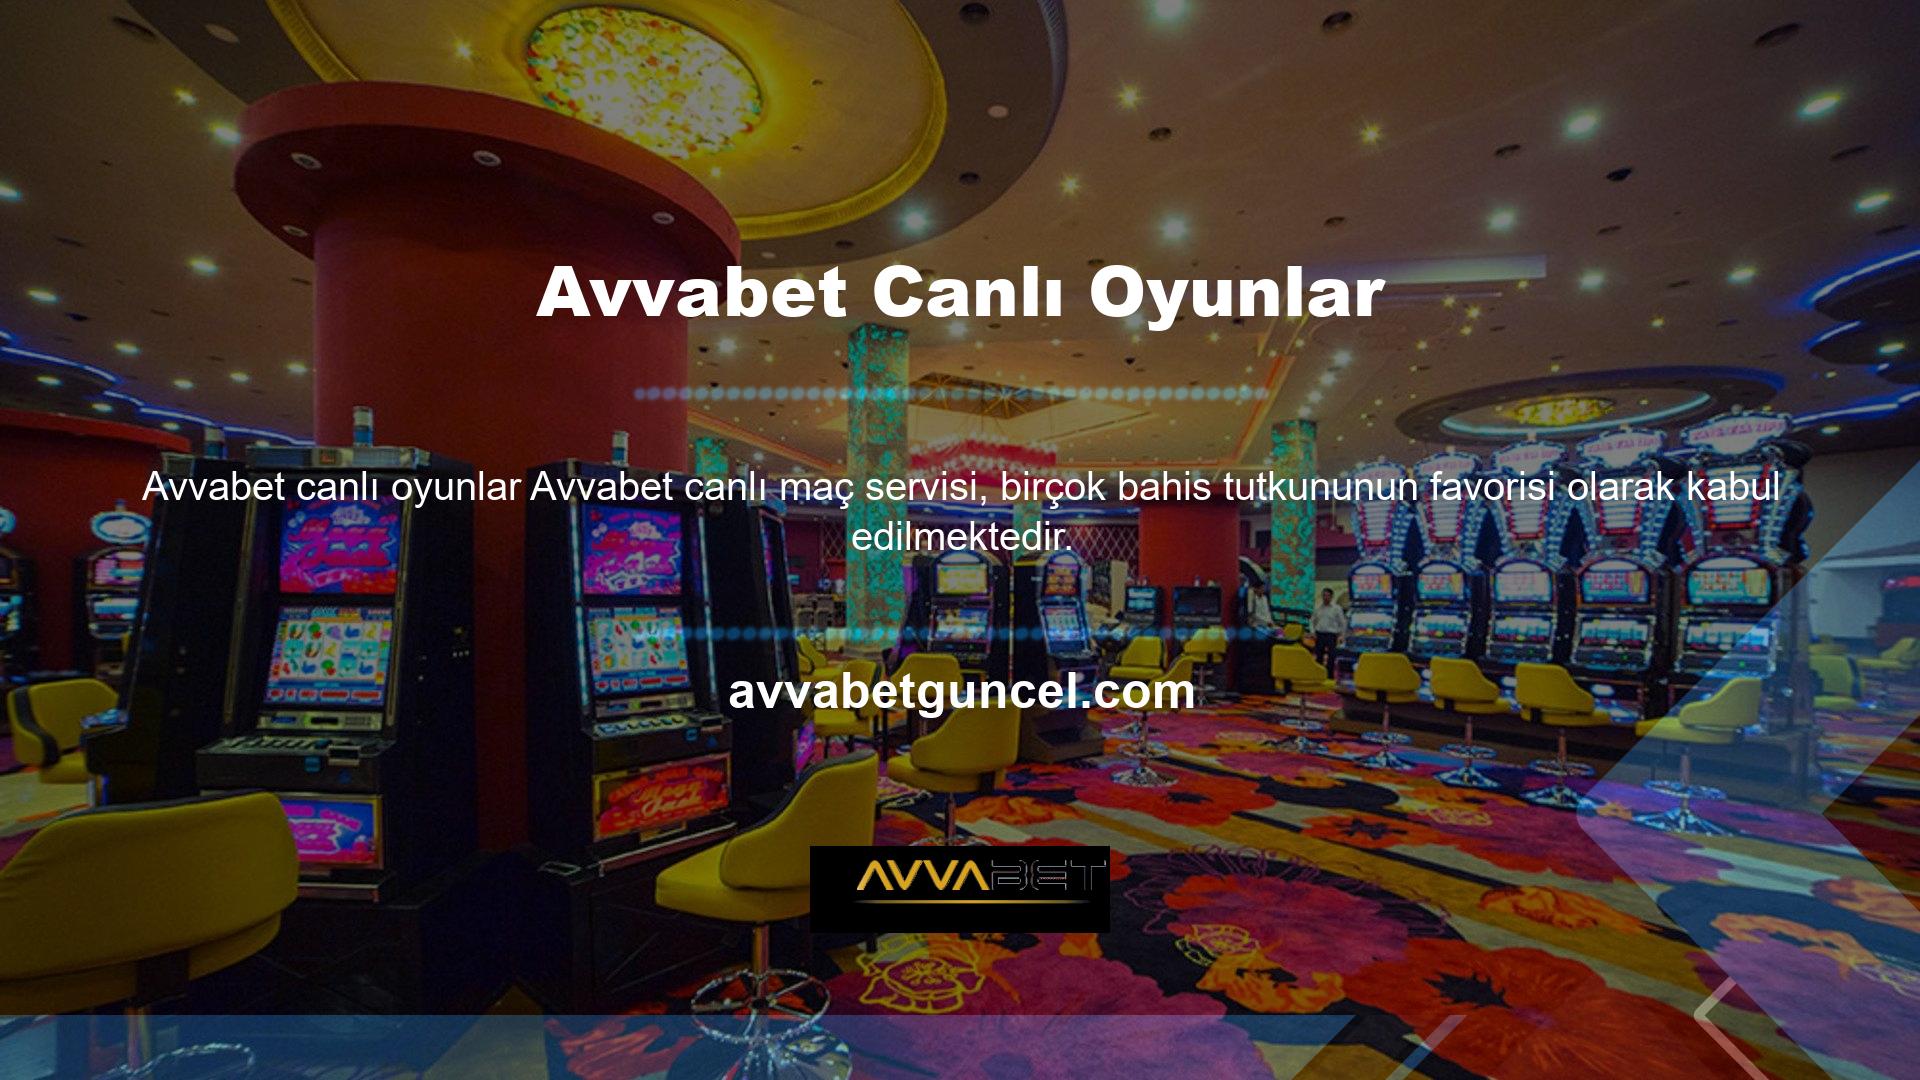 Spor ve casino oyunlarının birçok kategorisinin yanı sıra Avvabet bahis sitesinin canlı maç özelliği de bahis tutkunları tarafından kullanılmaktadır